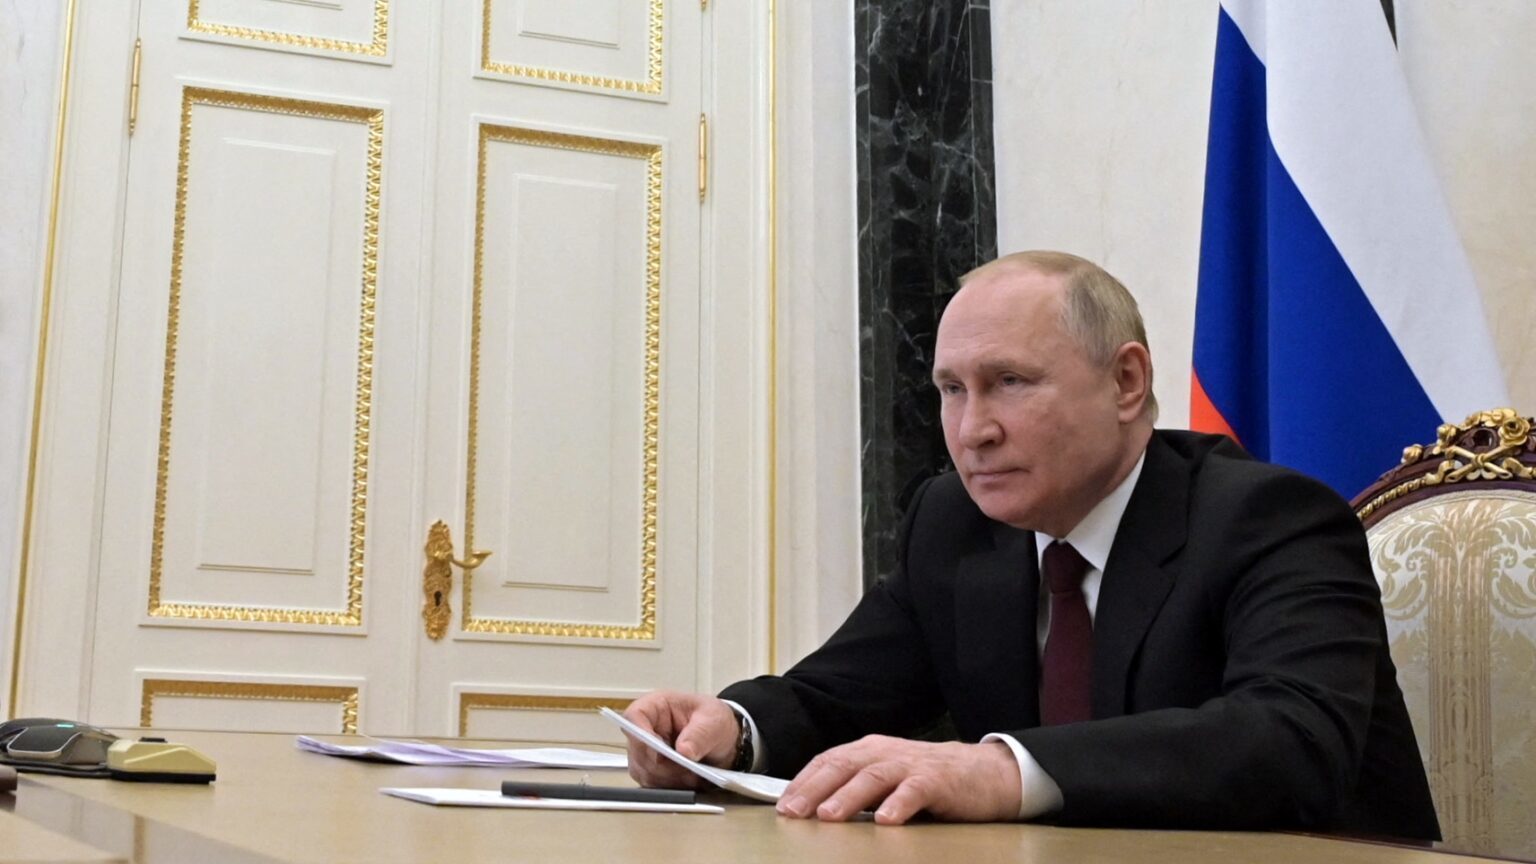 Ραγδαίες εξελίξεις στην Ουκρανία μετά το νέο διάγγελμα Πούτιν: Ανακοίνωσε μερική επιστράτευση